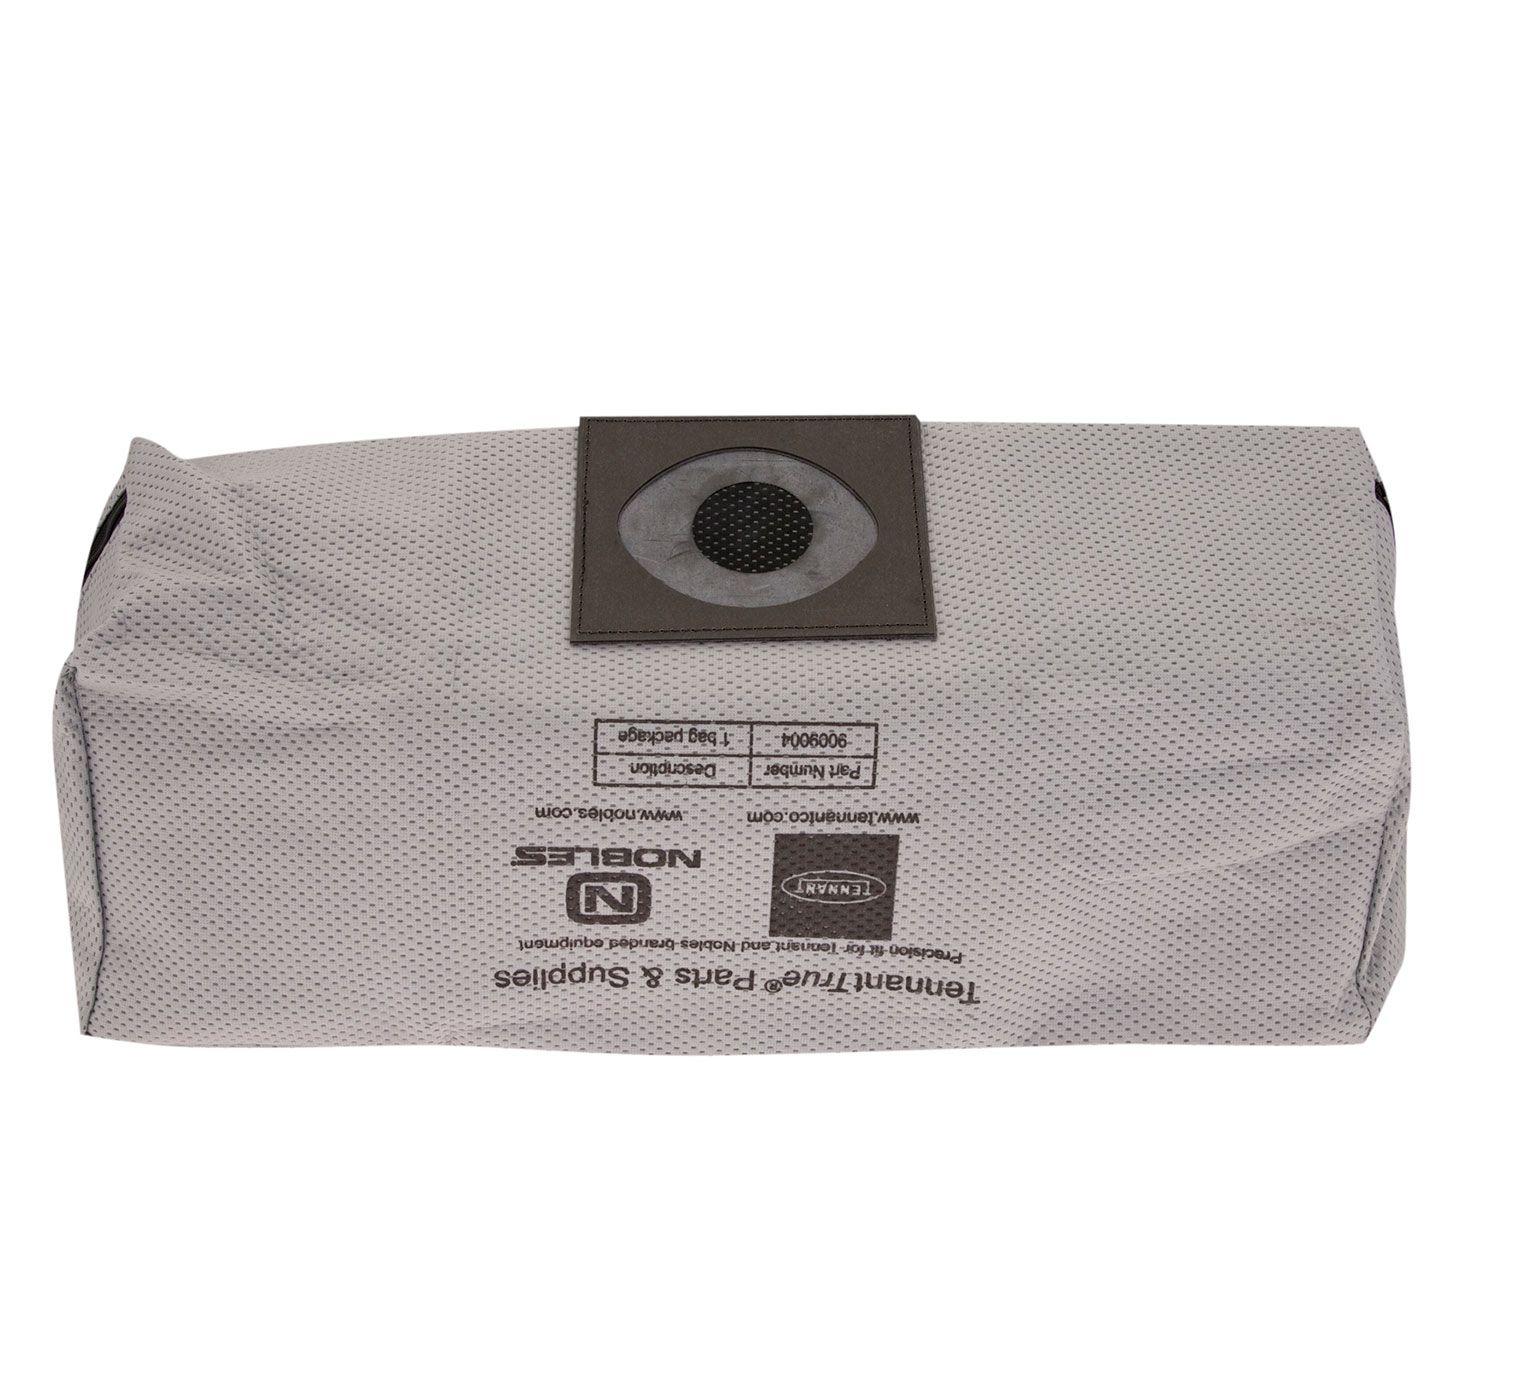 9009004 Sacs filtrants antipoussière en tissu (1 sac). alt 1